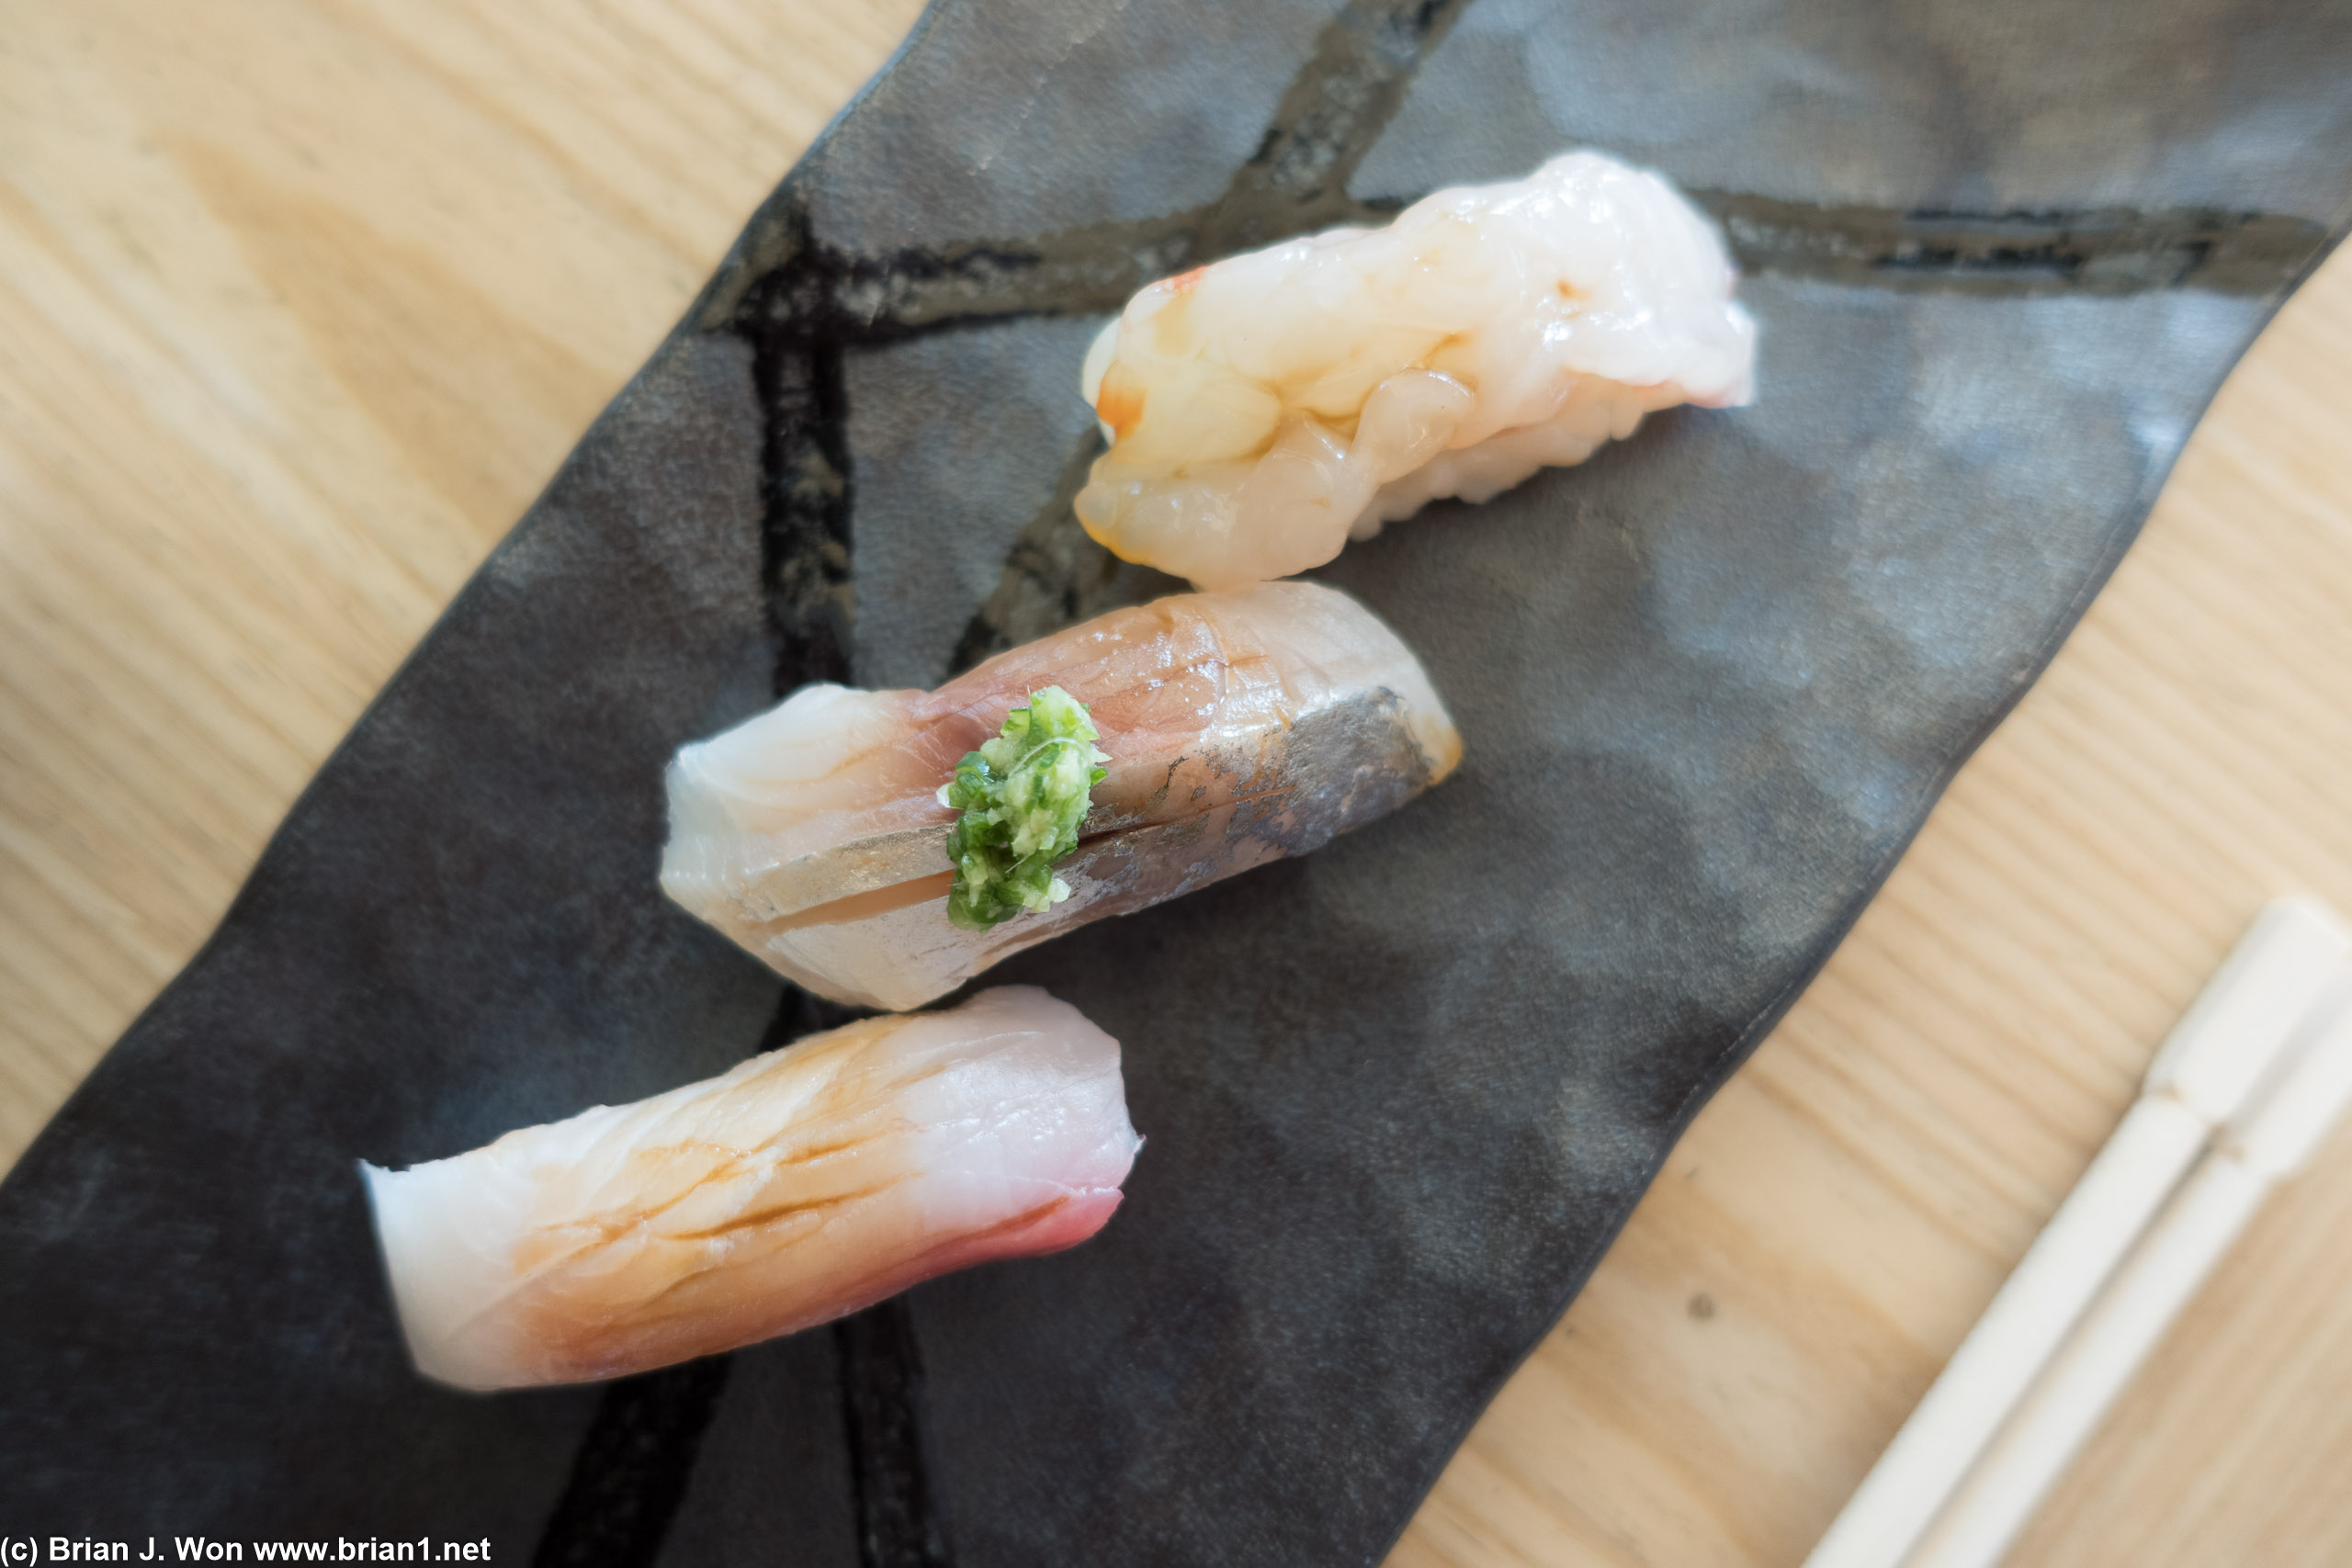 L to R: kanpachi (amberjack), aji (Spanish mackerel), botan ebi marinated in kelp (live sweet shrimp).